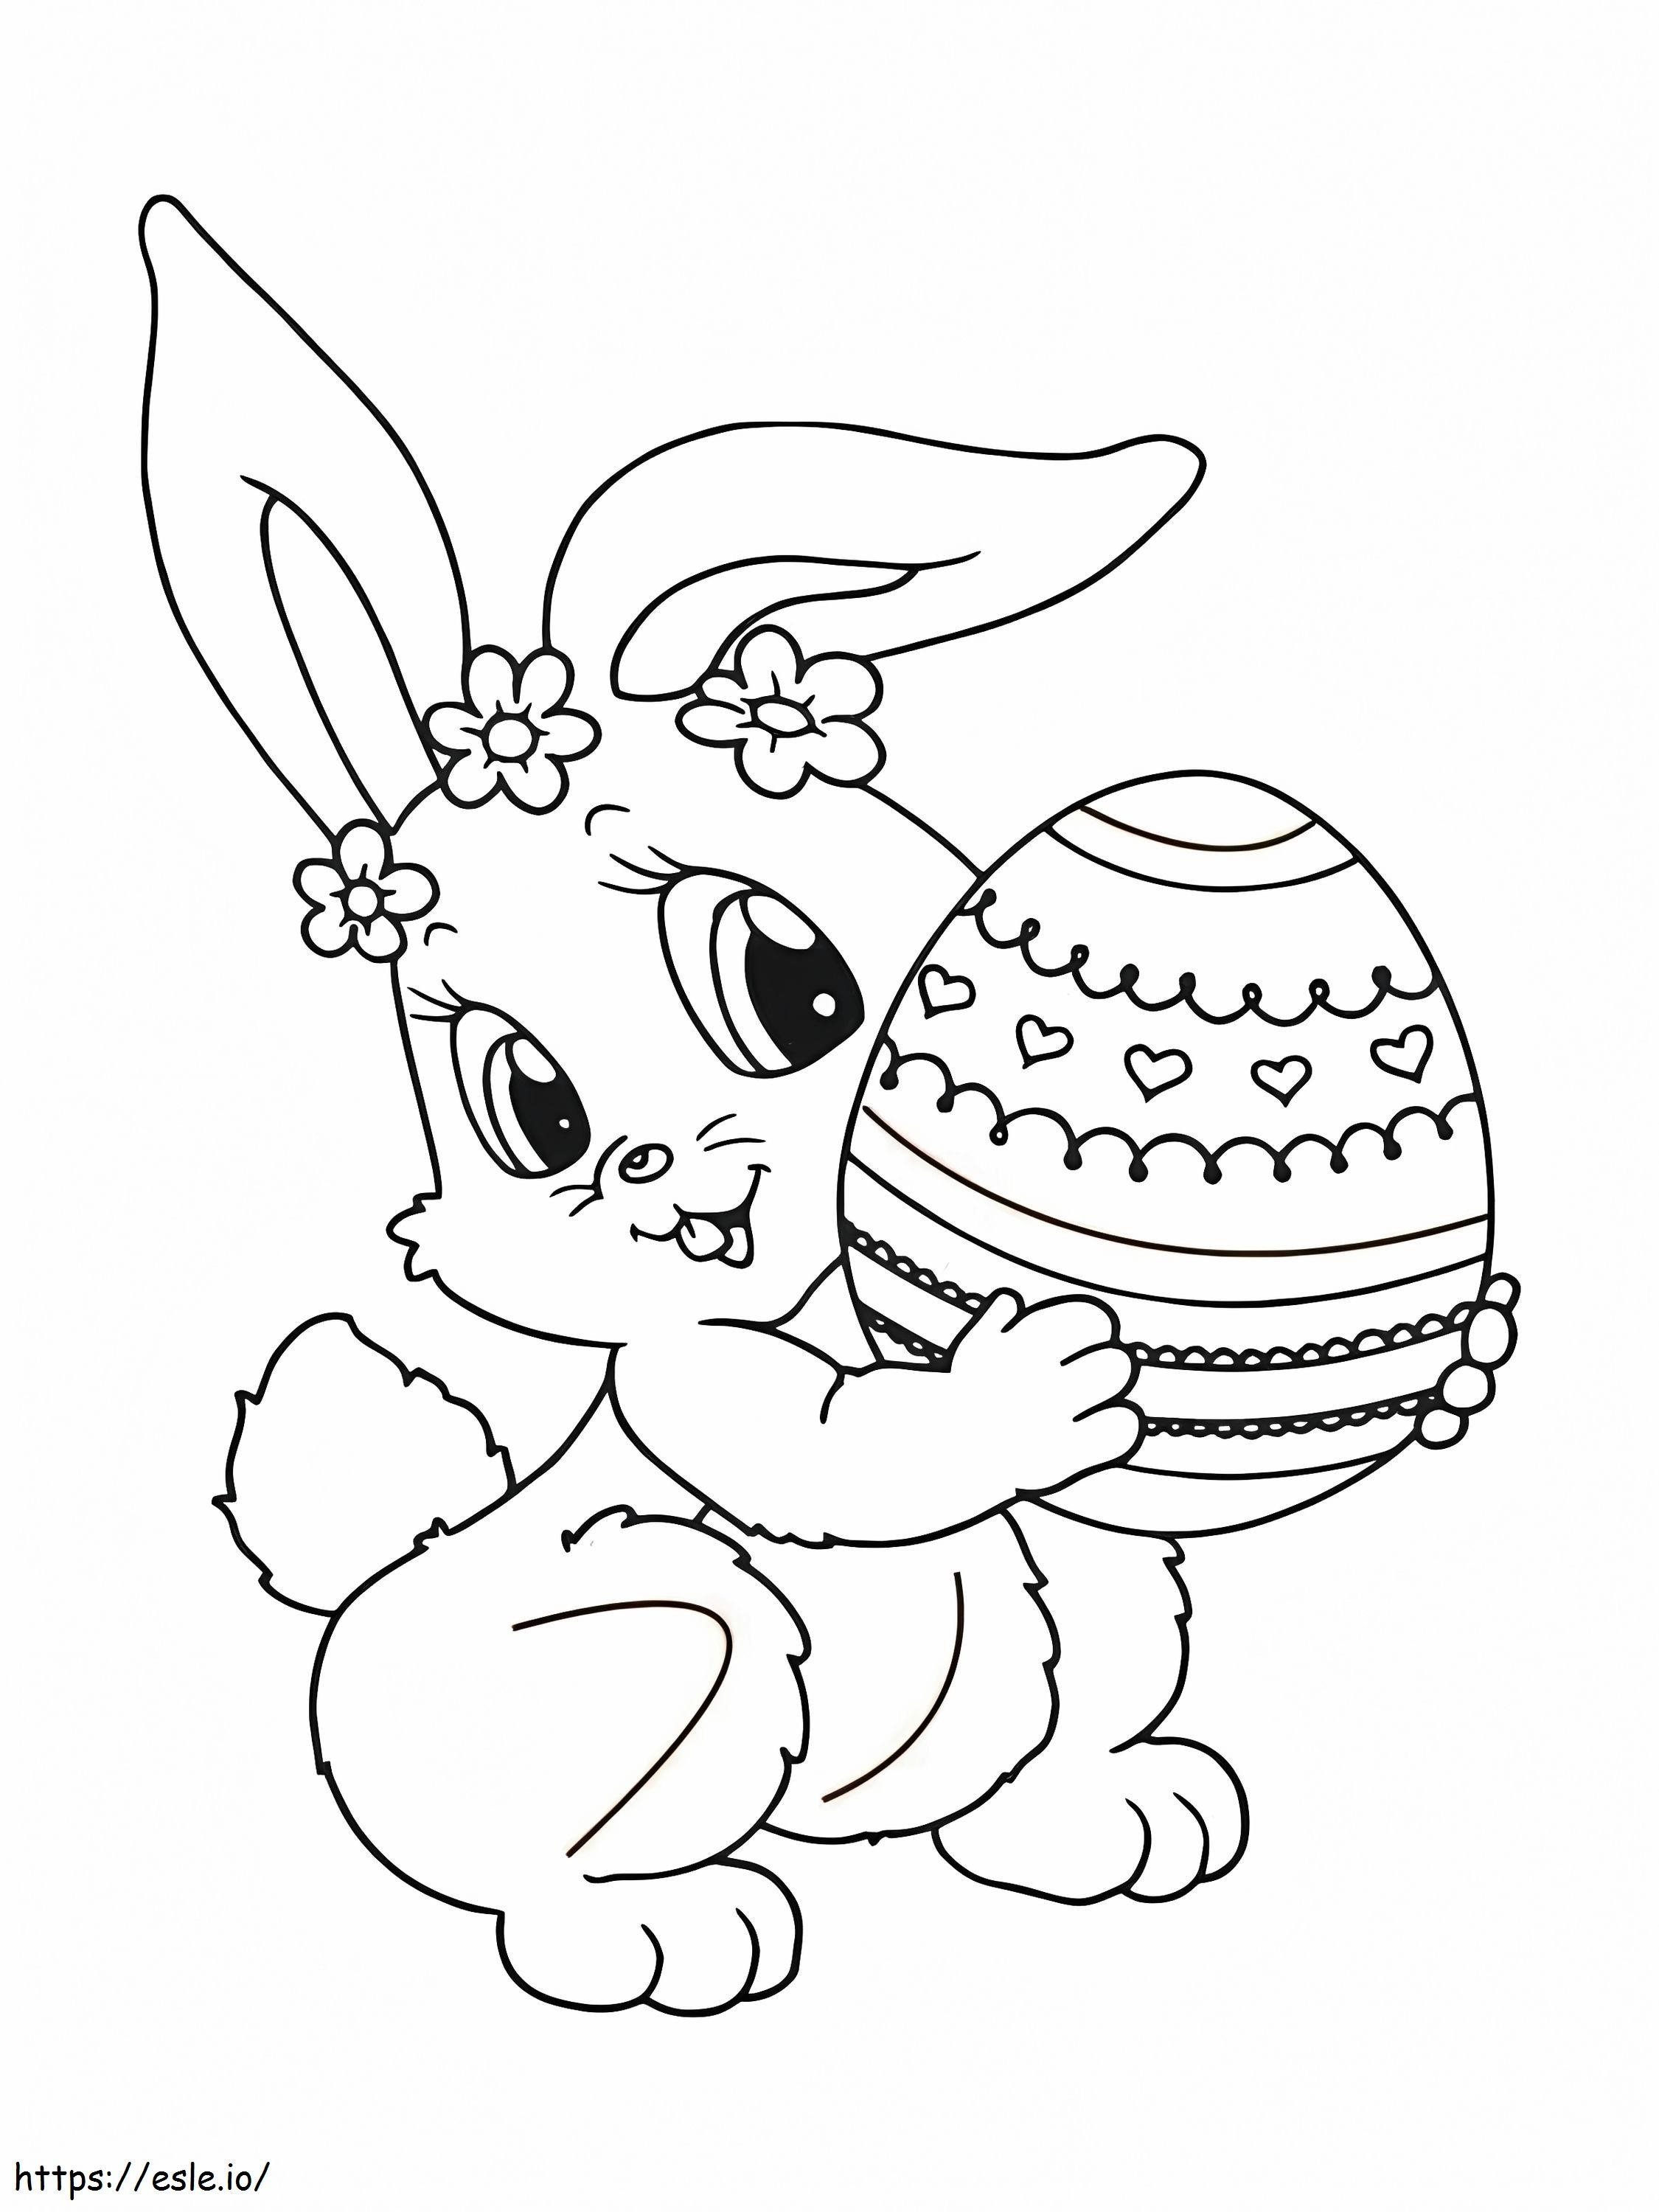 Simpatico coniglietto di Pasqua e uovo 2 da colorare